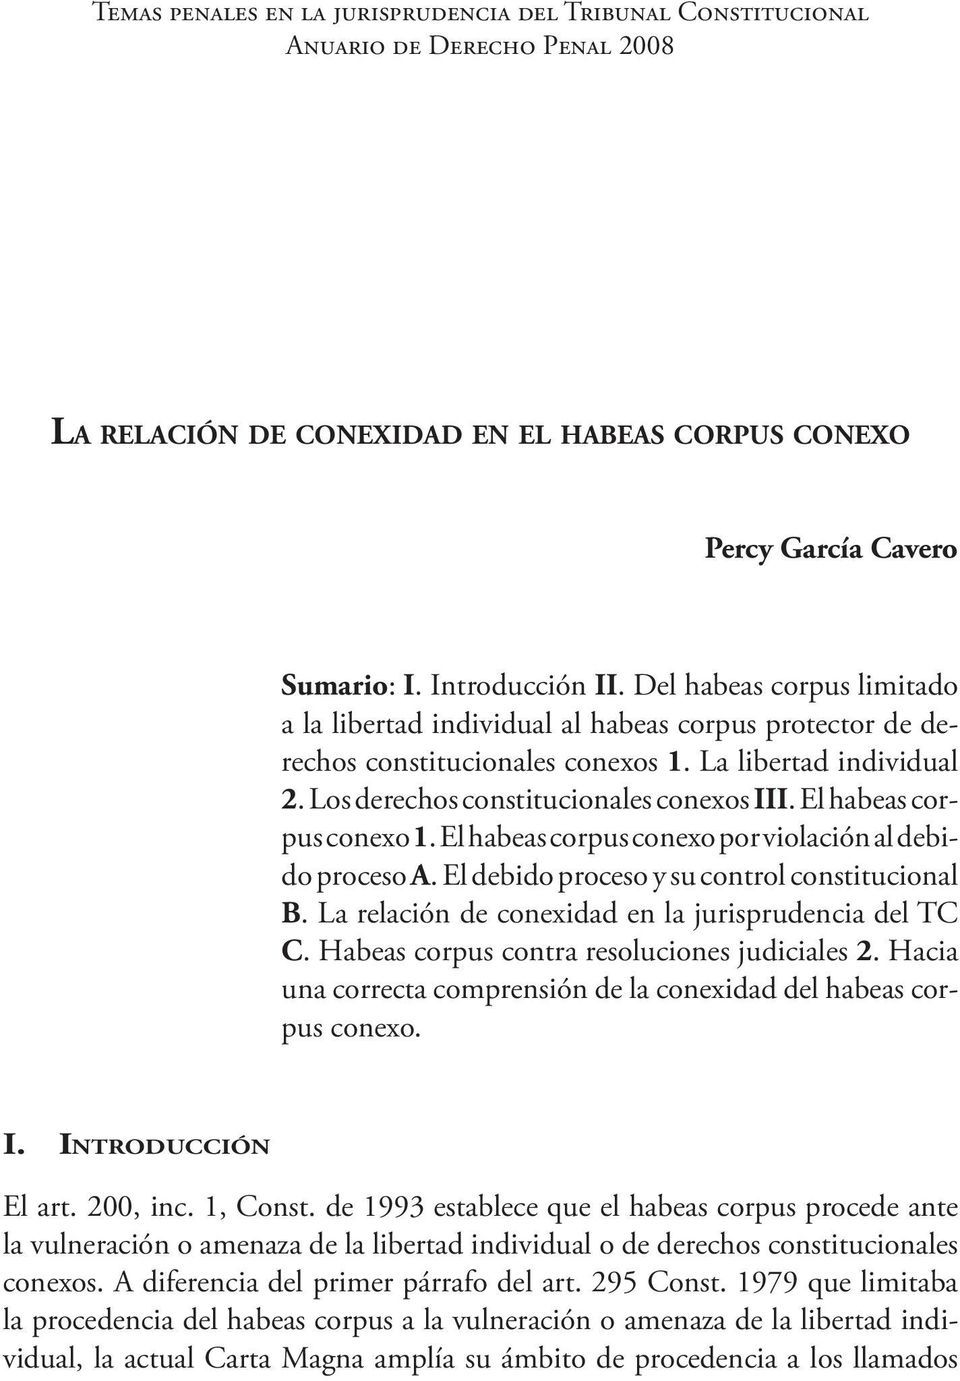 El habeas corpus conexo 1. El habeas corpus conexo por violación al debido proceso A. El debido proceso y su control constitucional B. La relación de conexidad en la jurisprudencia del TC C.